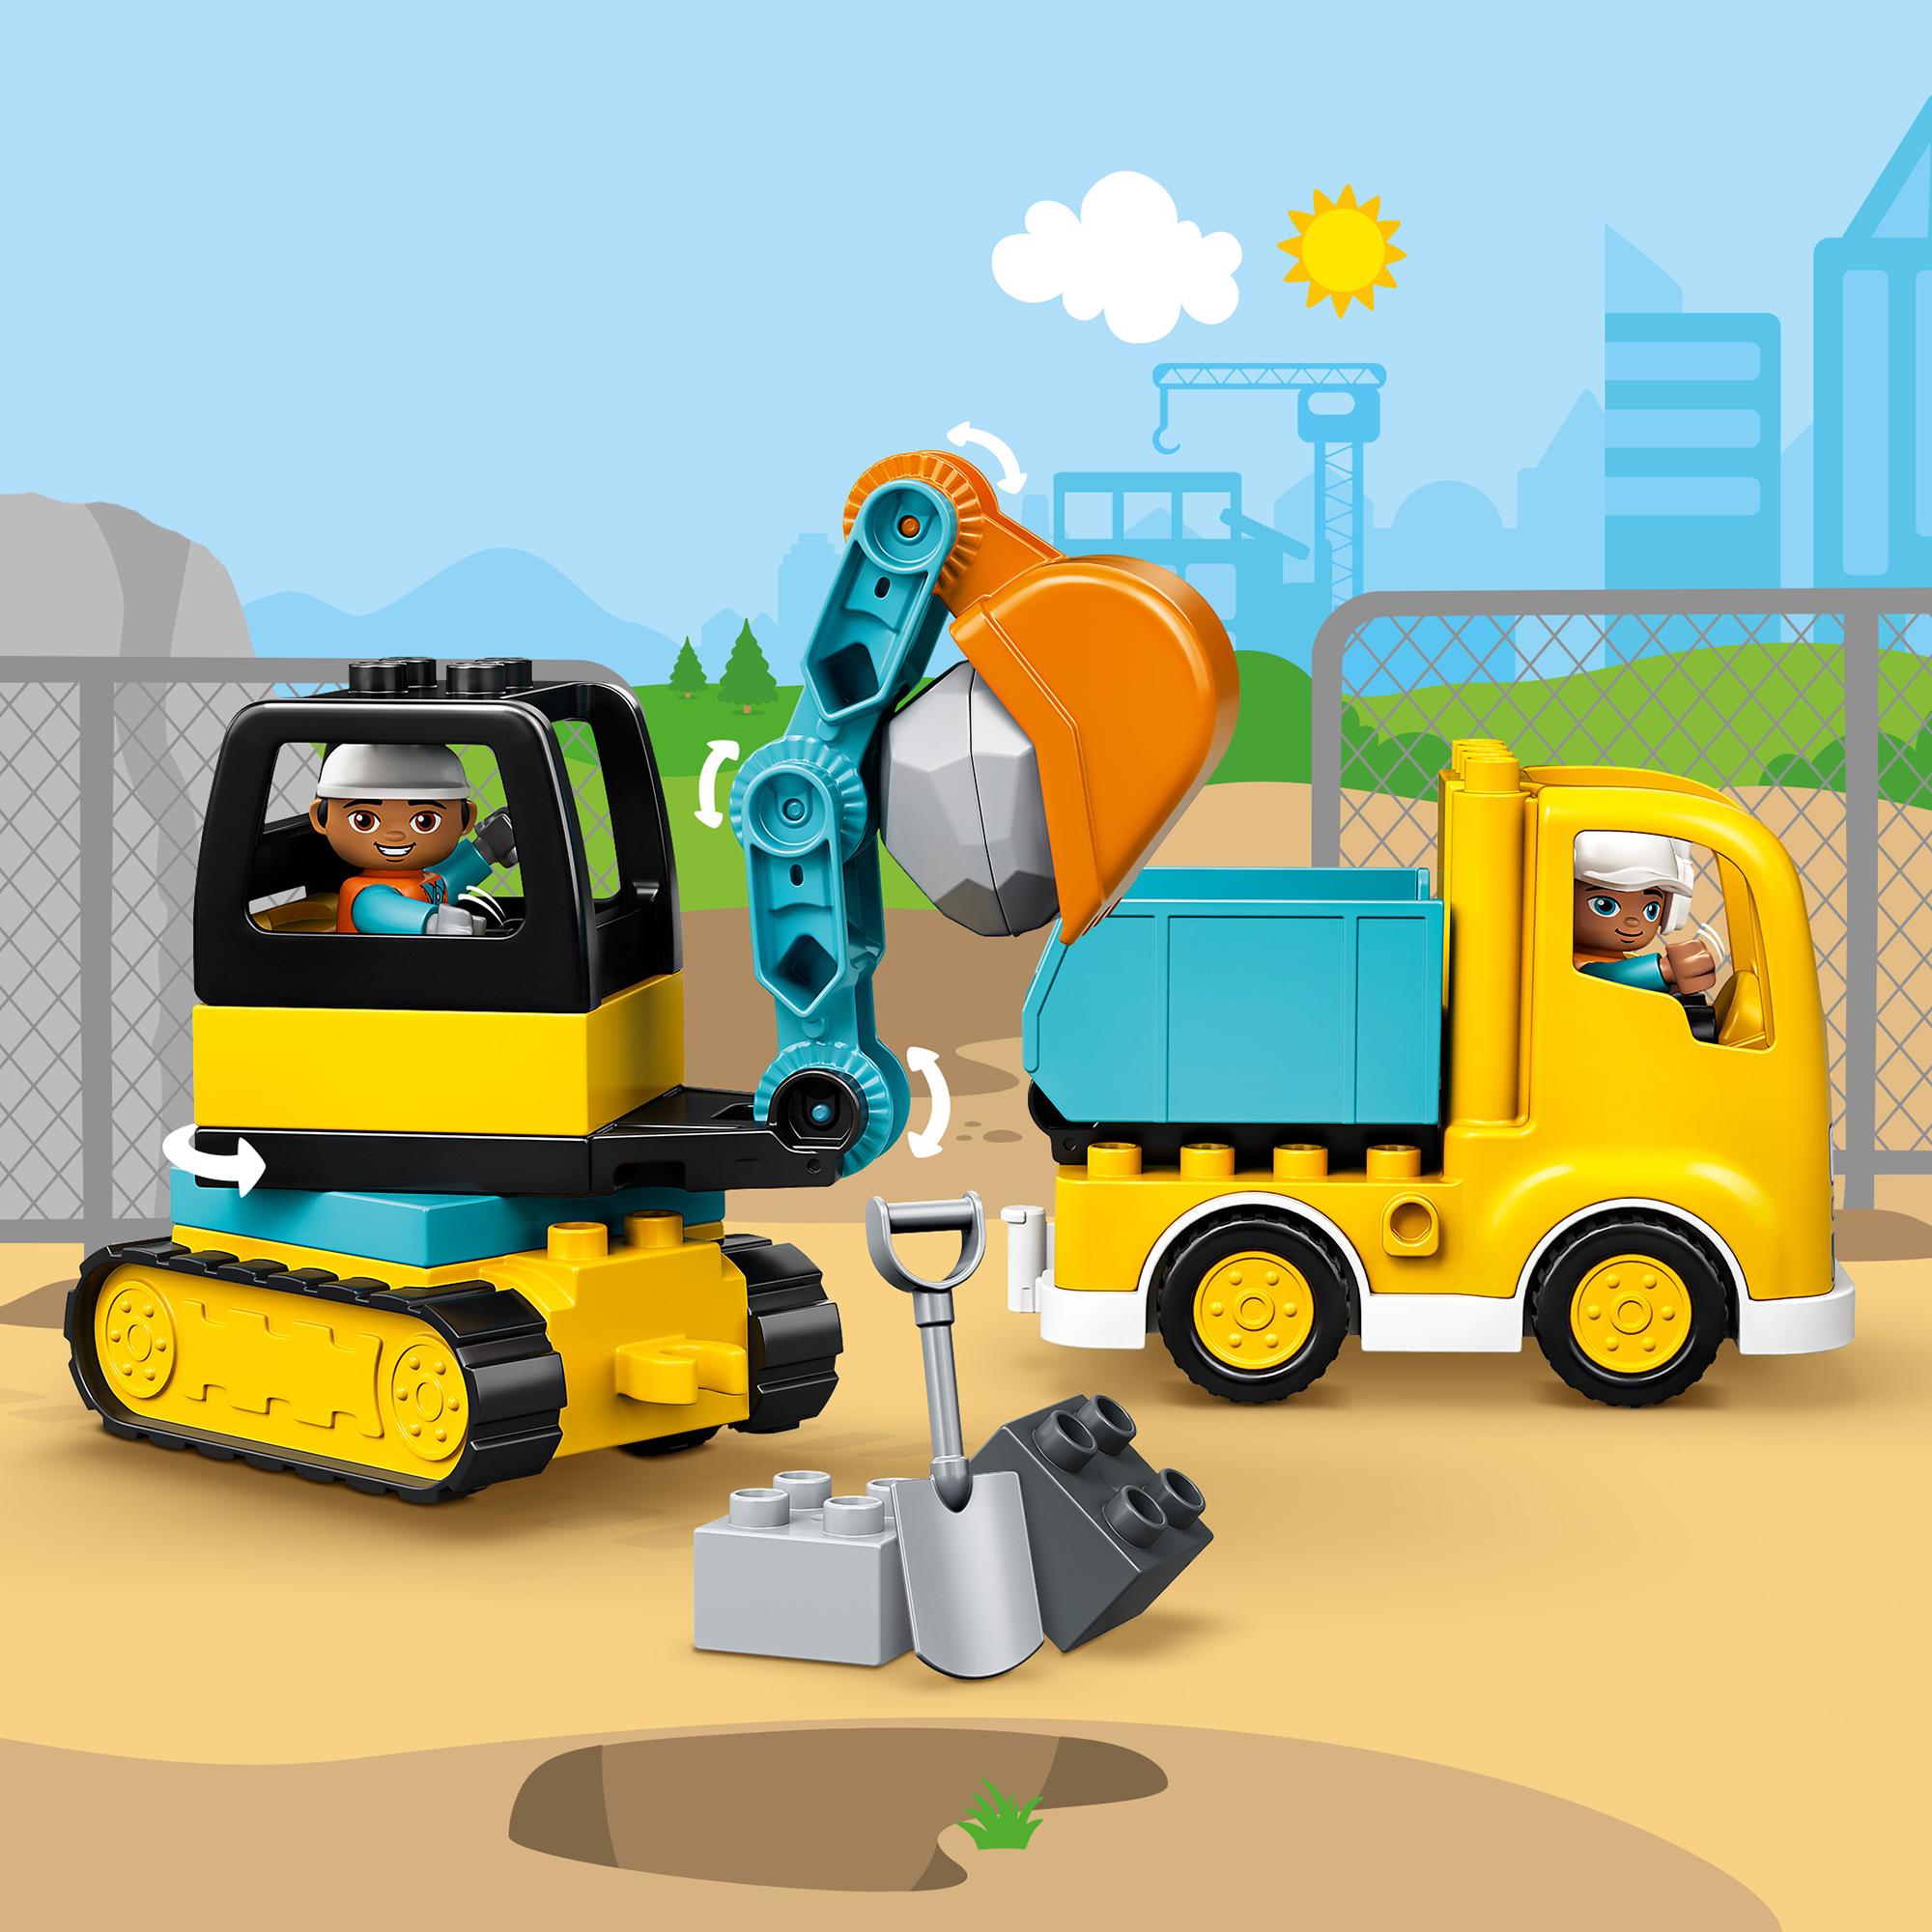 Lego duplo town 10931 camion e scavatrice cingolata, scavatore giocattolo, sviluppo delle abilità motorie, giochi per bambini - LEGO DUPLO, Lego